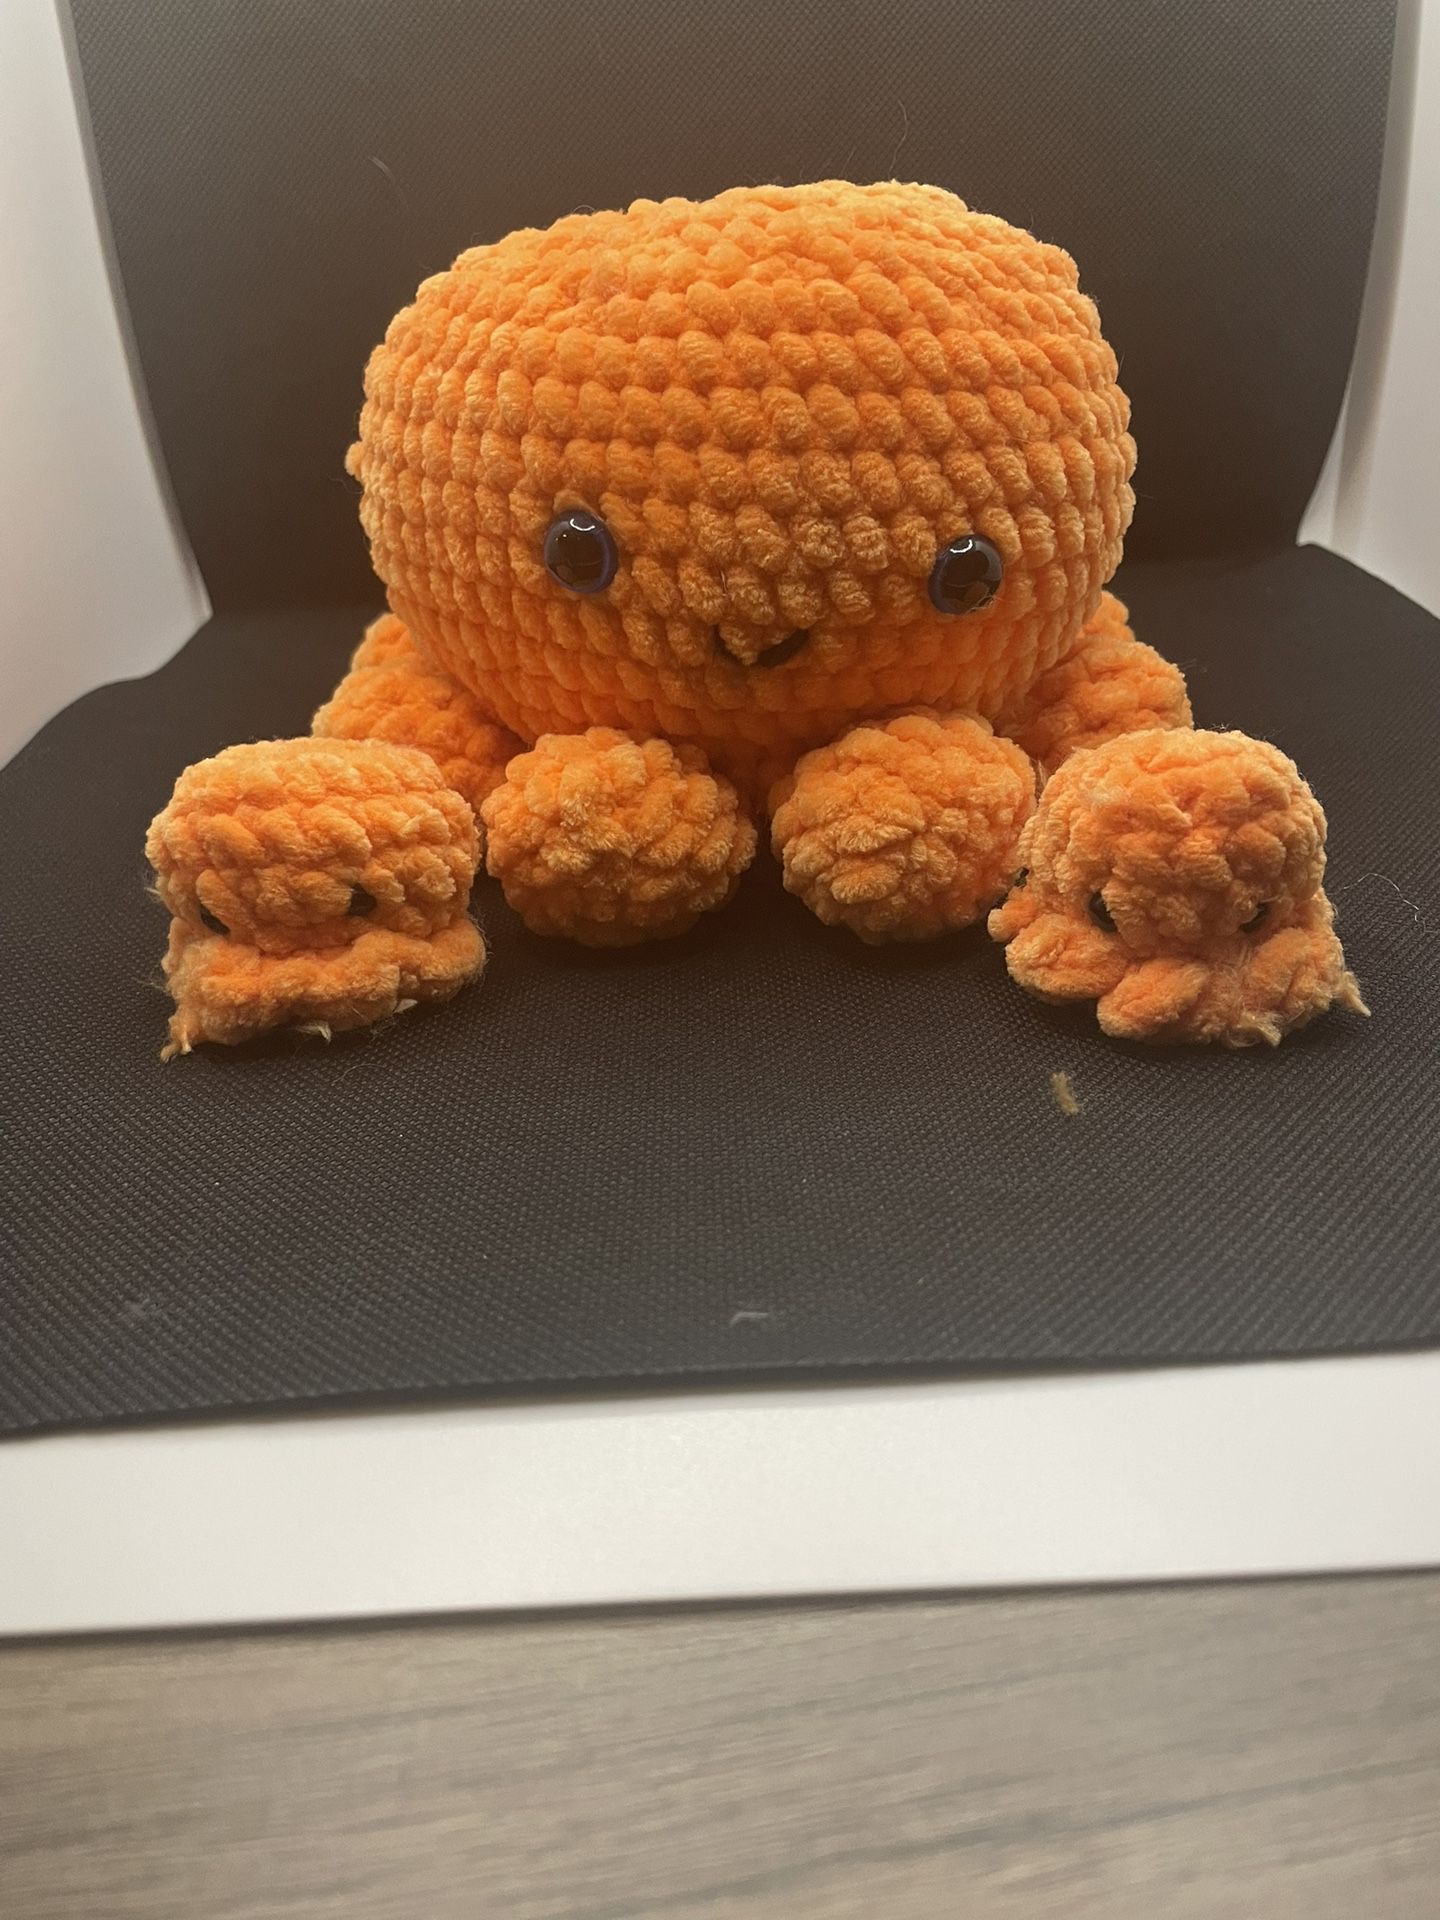  Crochet Octopus With Babies